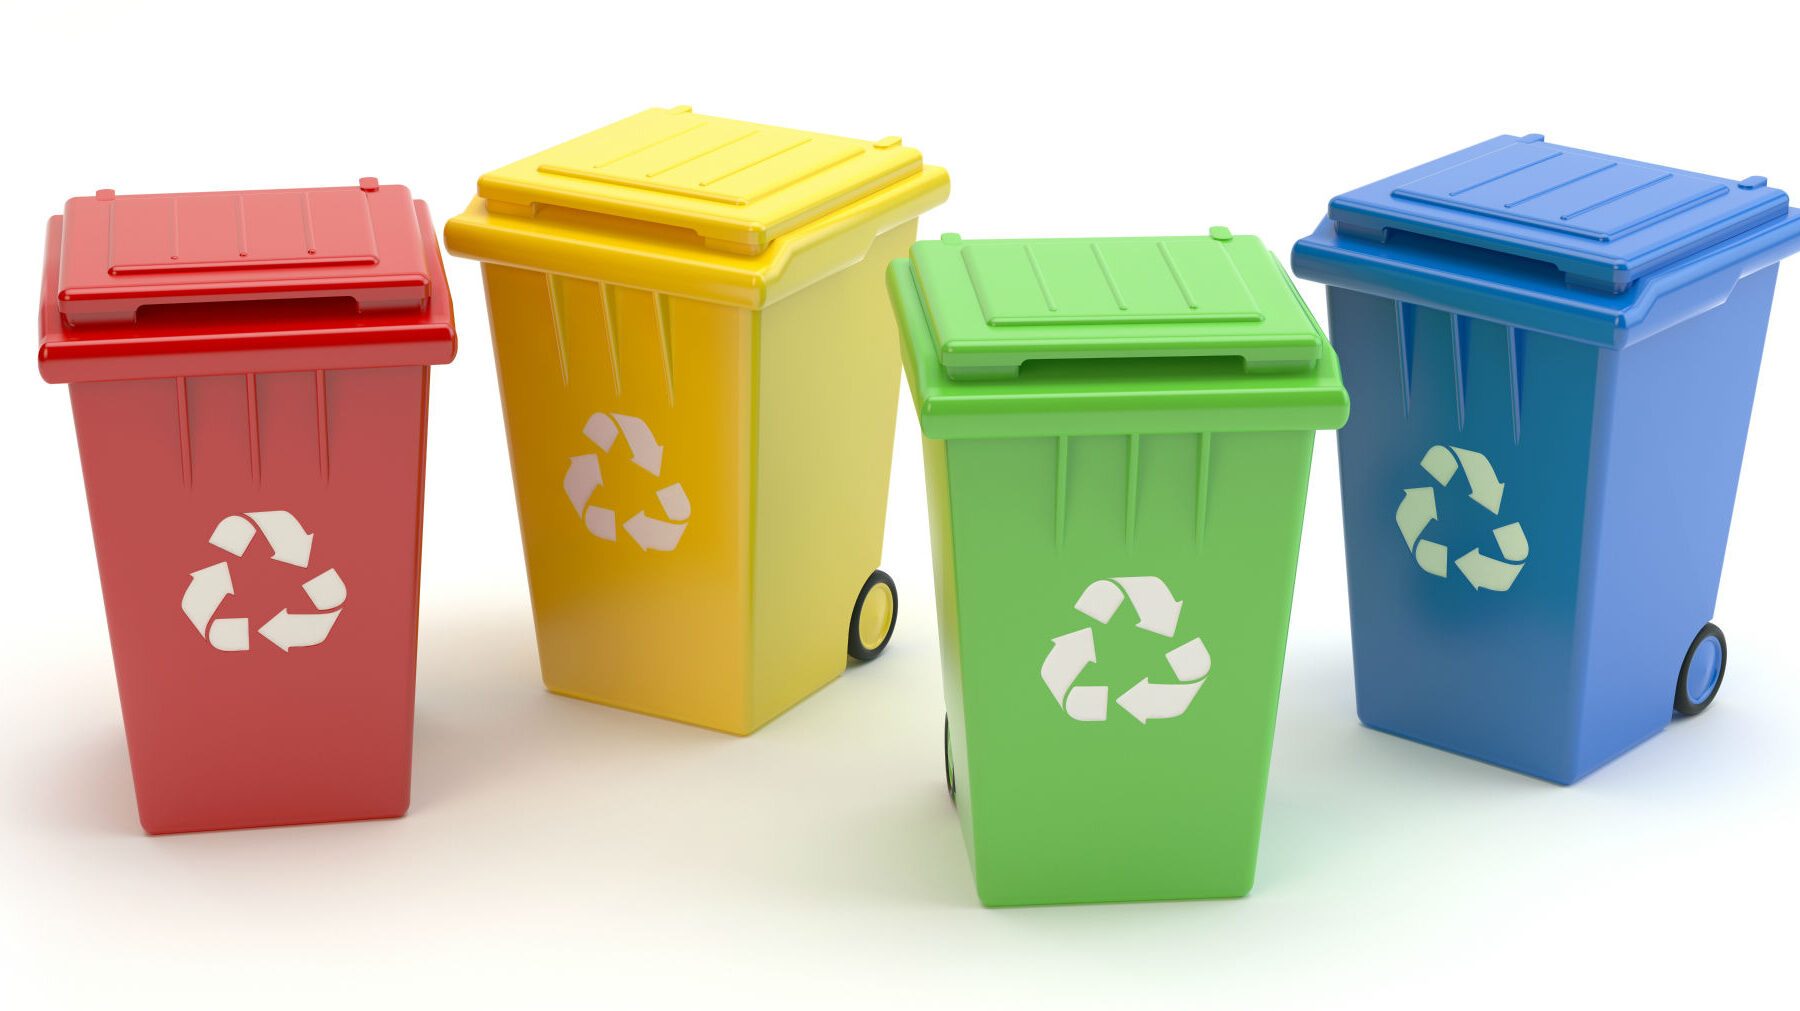 Faire le tri sélectif : pourquoi et comment optimiser nos déchets au quotidien ?